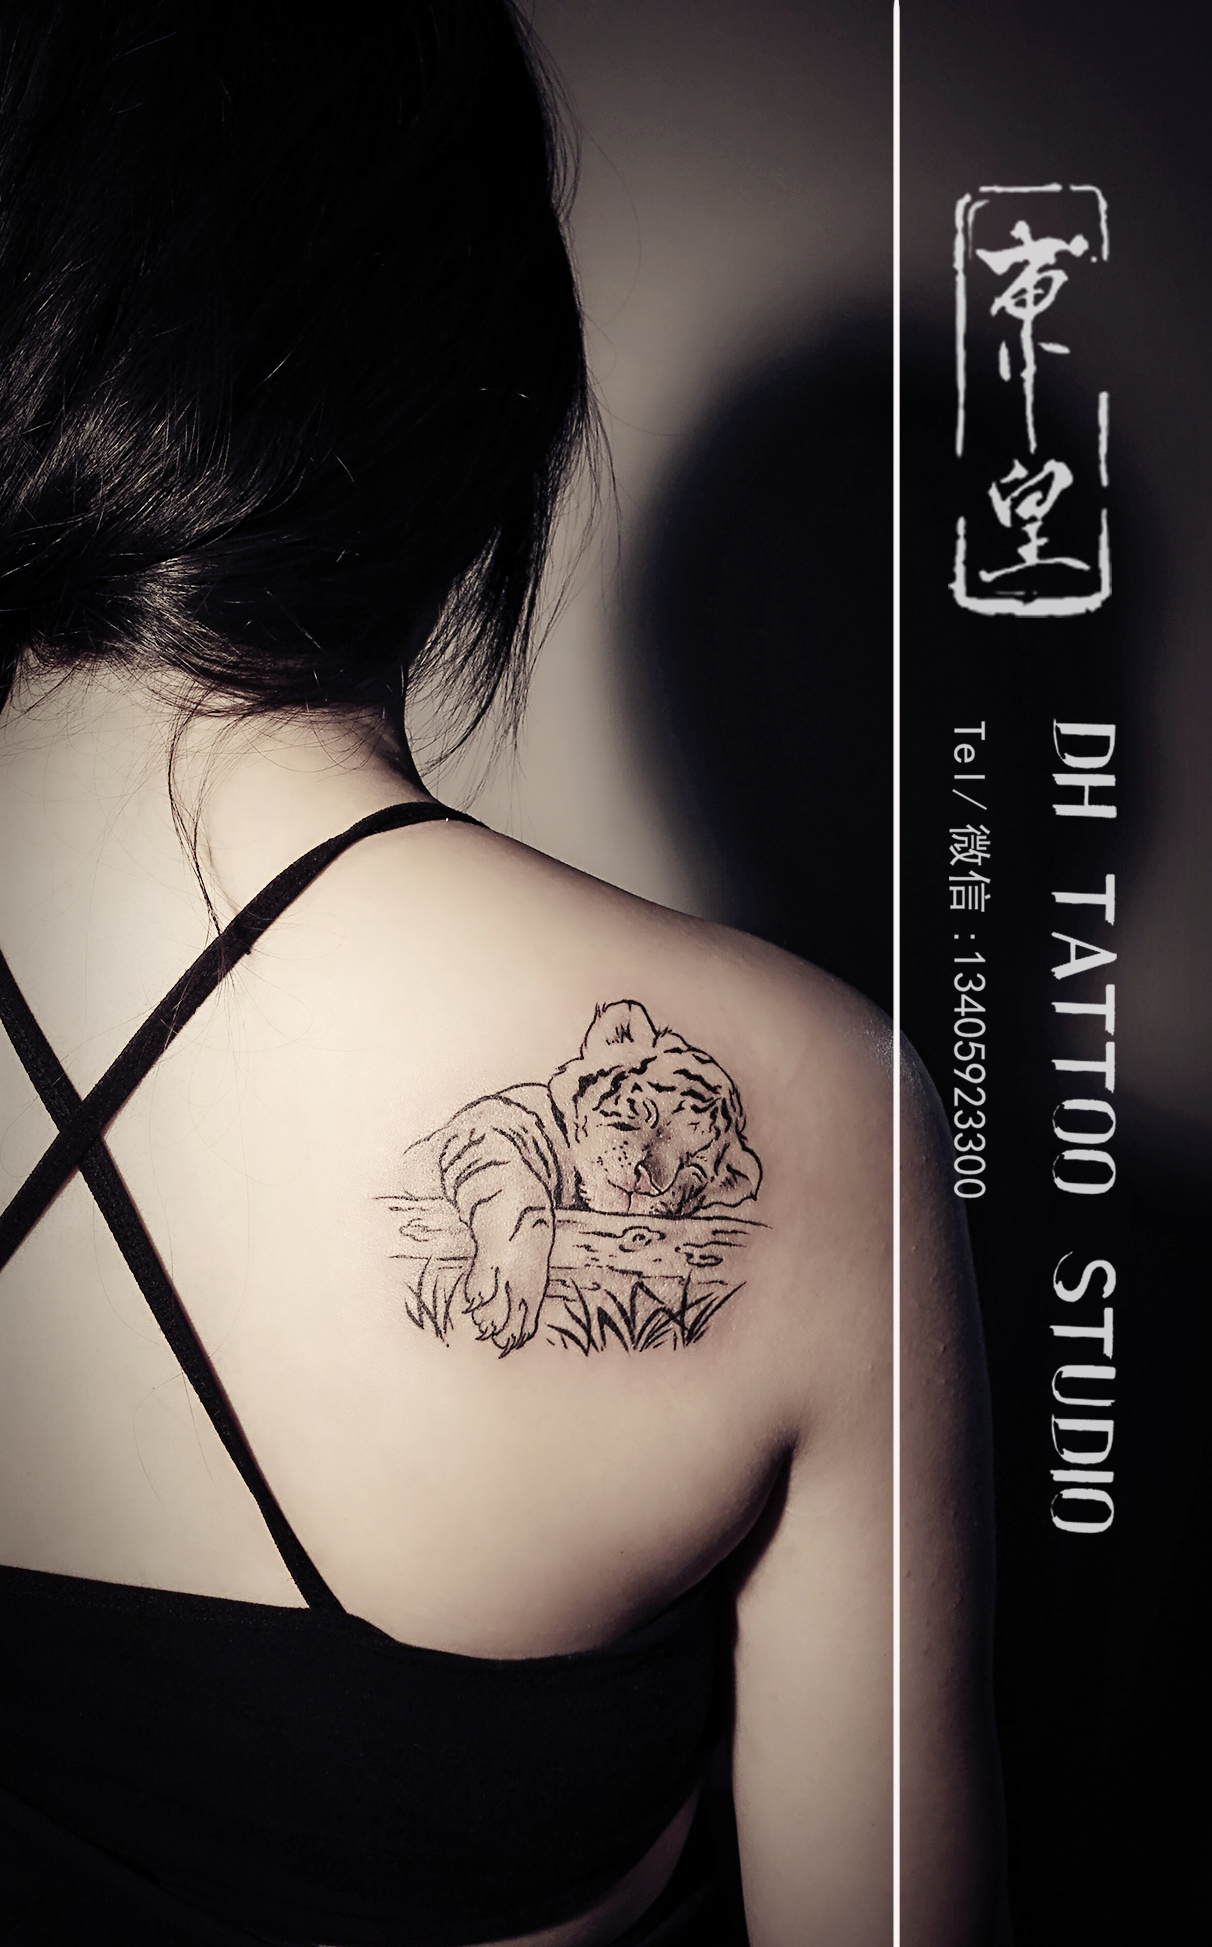 传统纹身# #纹身手稿##福州纹身##时尚纹身##纹身图案设计##后肩纹身